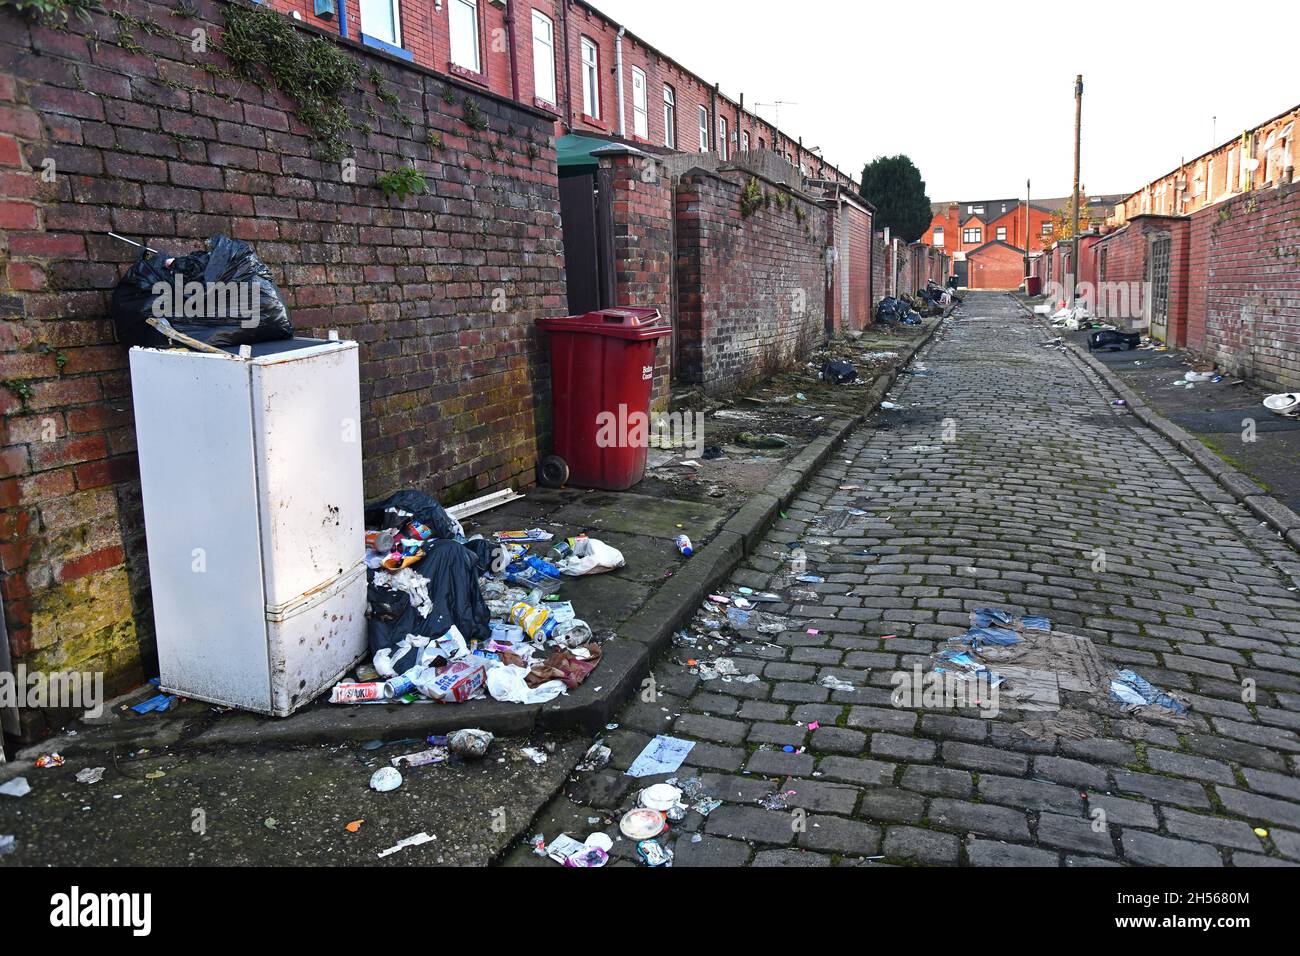 Maisons dos à dos avec rues pavées parsemées de déchets, Bolton, Lancashire Banque D'Images